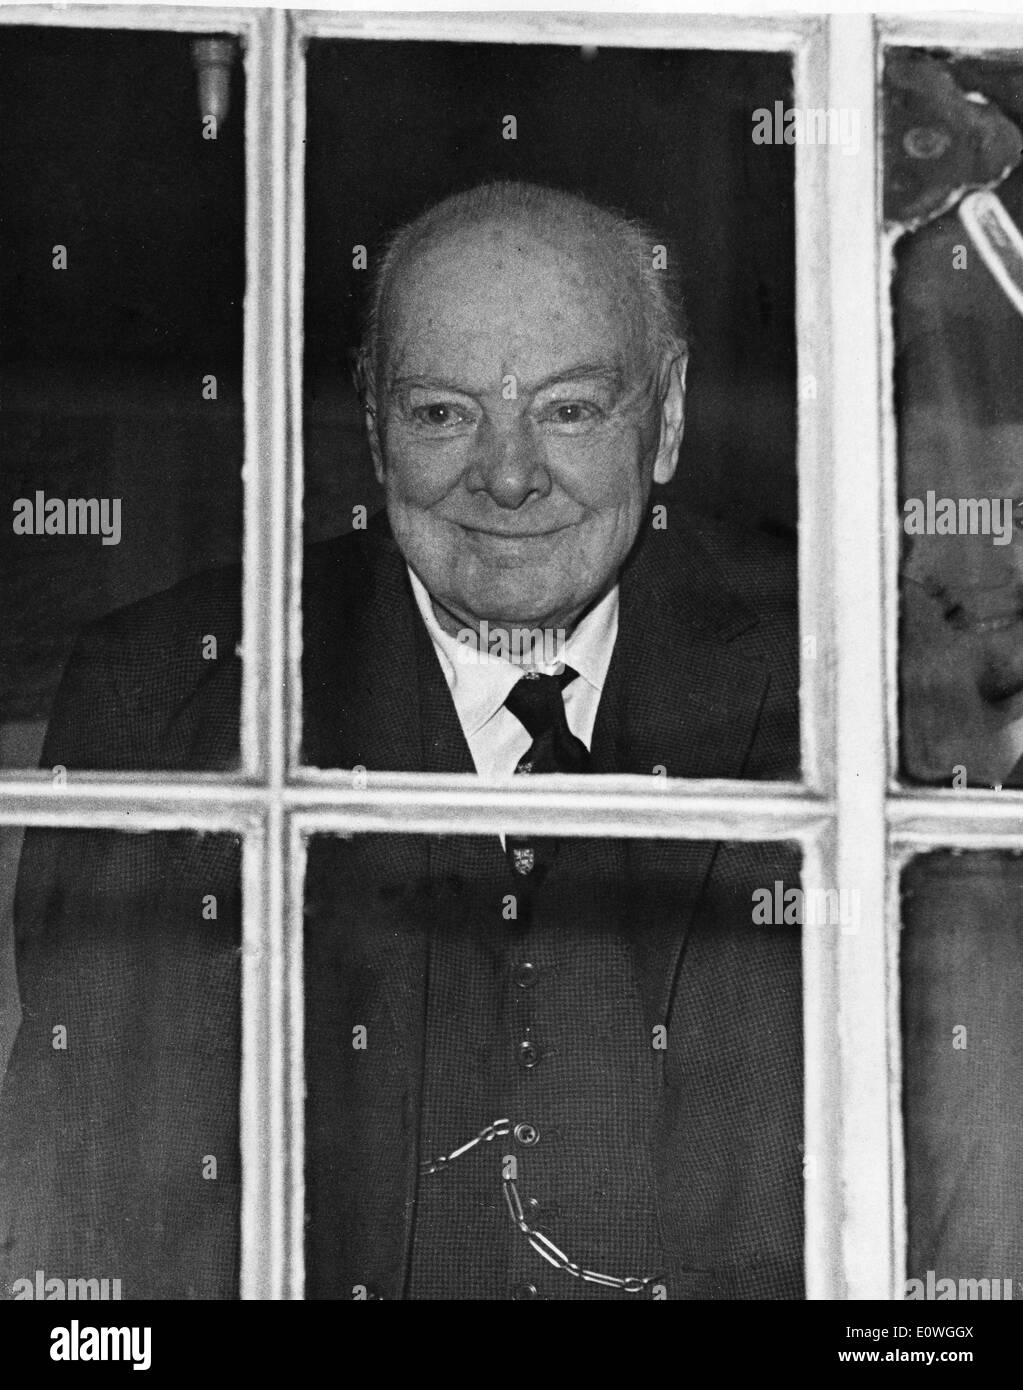 Sir Winston Churchill regarde par la fenêtre sur son 88e anniversaire Banque D'Images